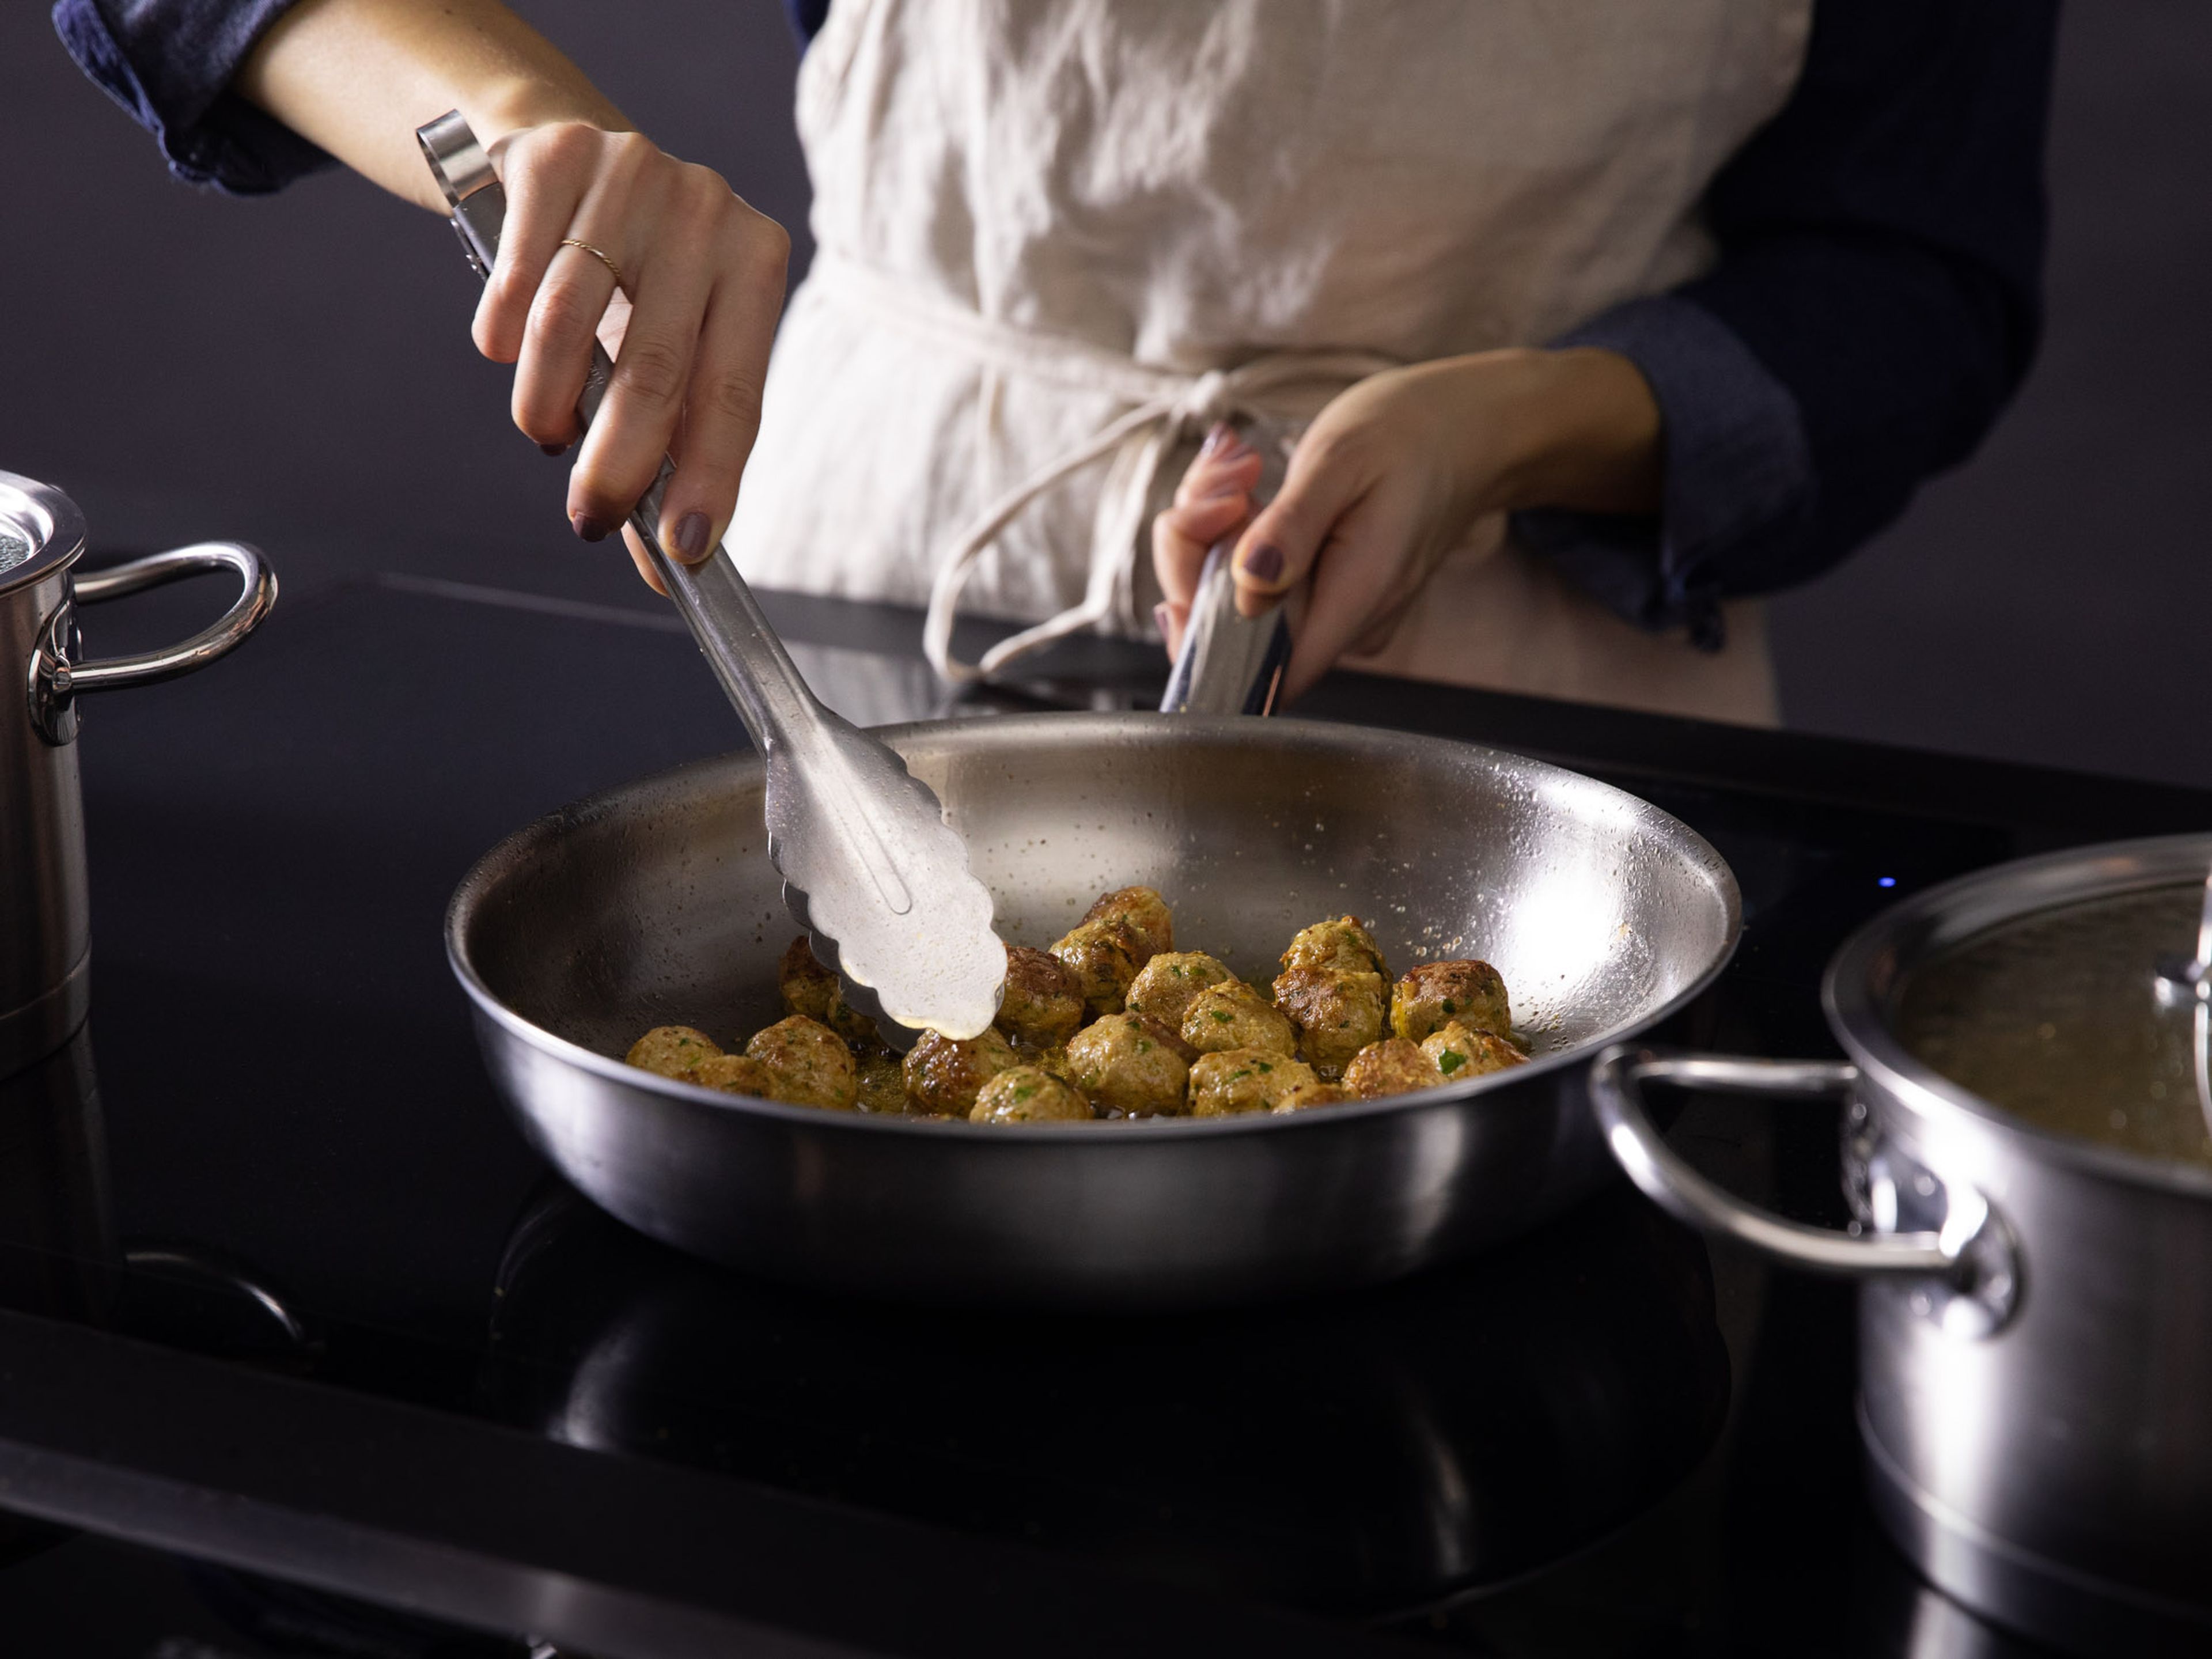 Wasser in einem kleinen Topf zum Kochen bringen. Die Fleischbällchen nacheinander hinzufügen und ca. 5 Min. garen. In einer Pfanne bei mittlerer Hitze etwas Öl erhitzen und die Fleischbällchen für ca. 8 Min. braten bis sie braun sind.